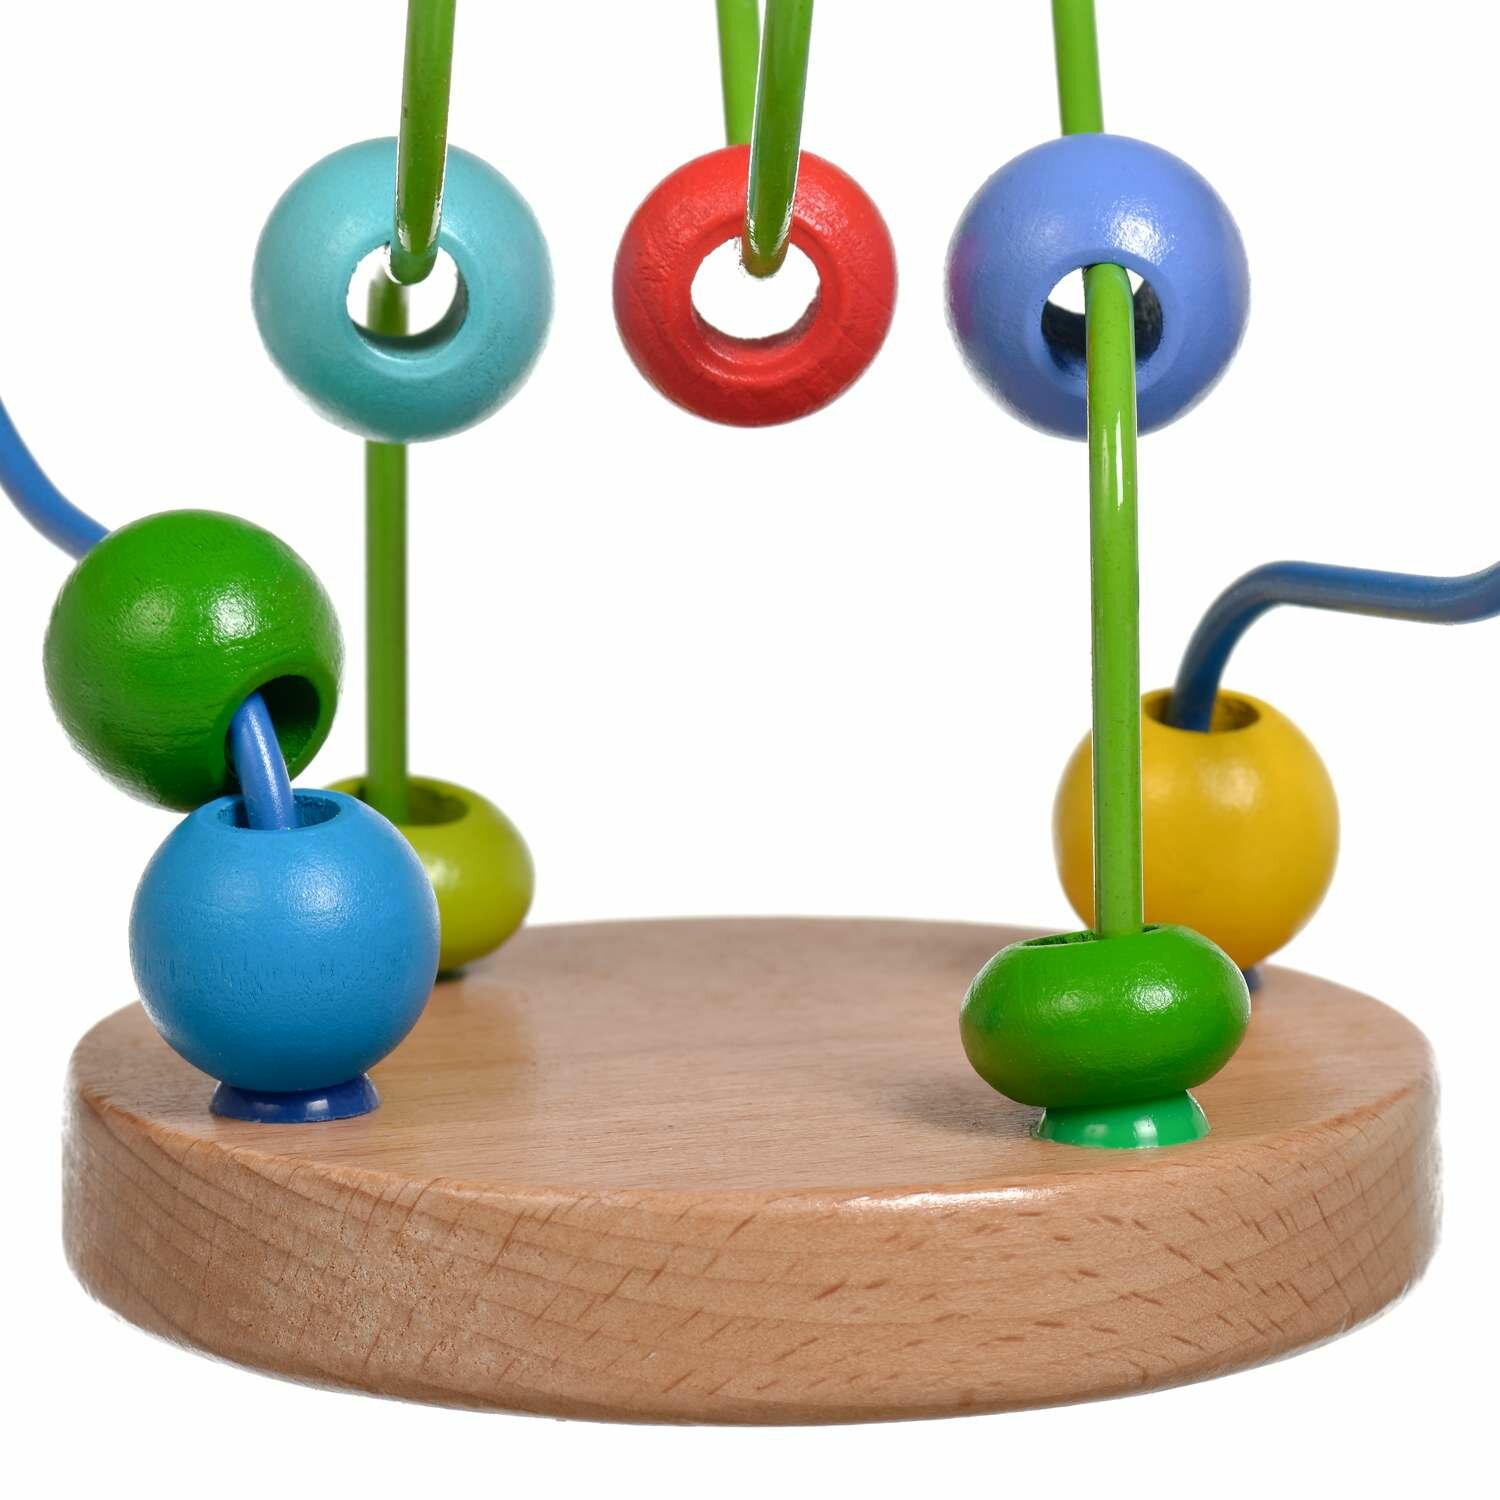 Игрушка из дерева МДИ, Лабиринт № 7 Мир деревянных игрушек - фото №4